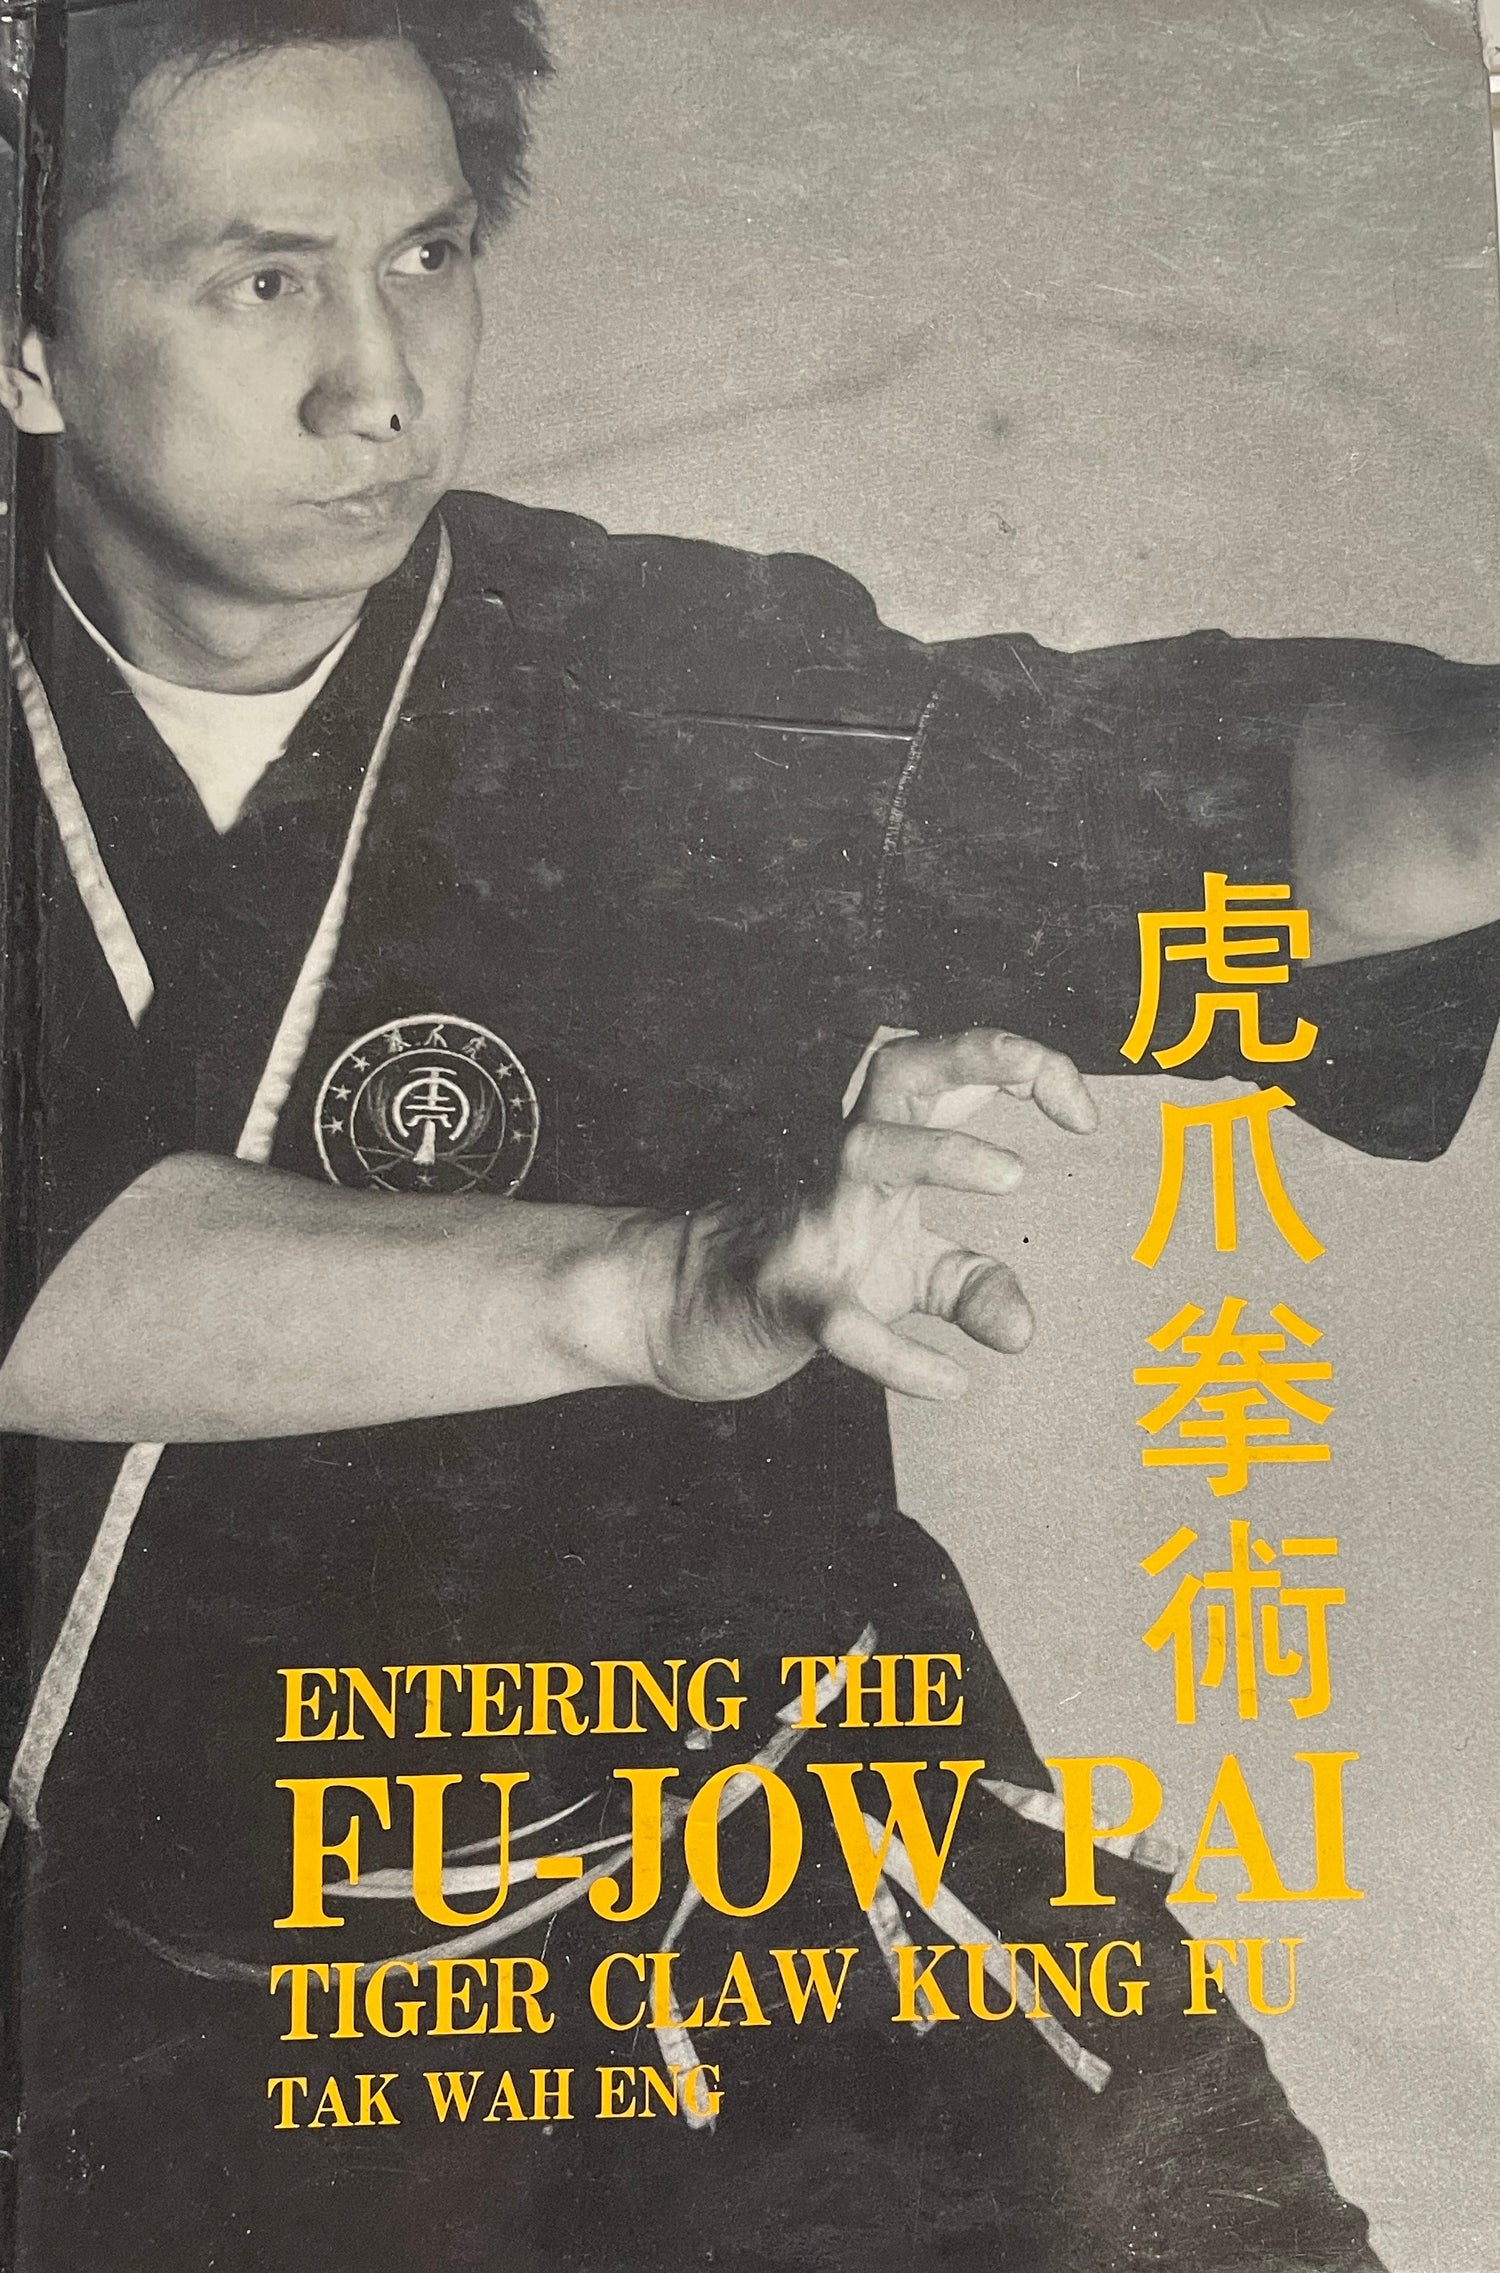 Entrando en el libro Fu-jow pai Tiger claw kung fu de Tak Wah Eng (usado)